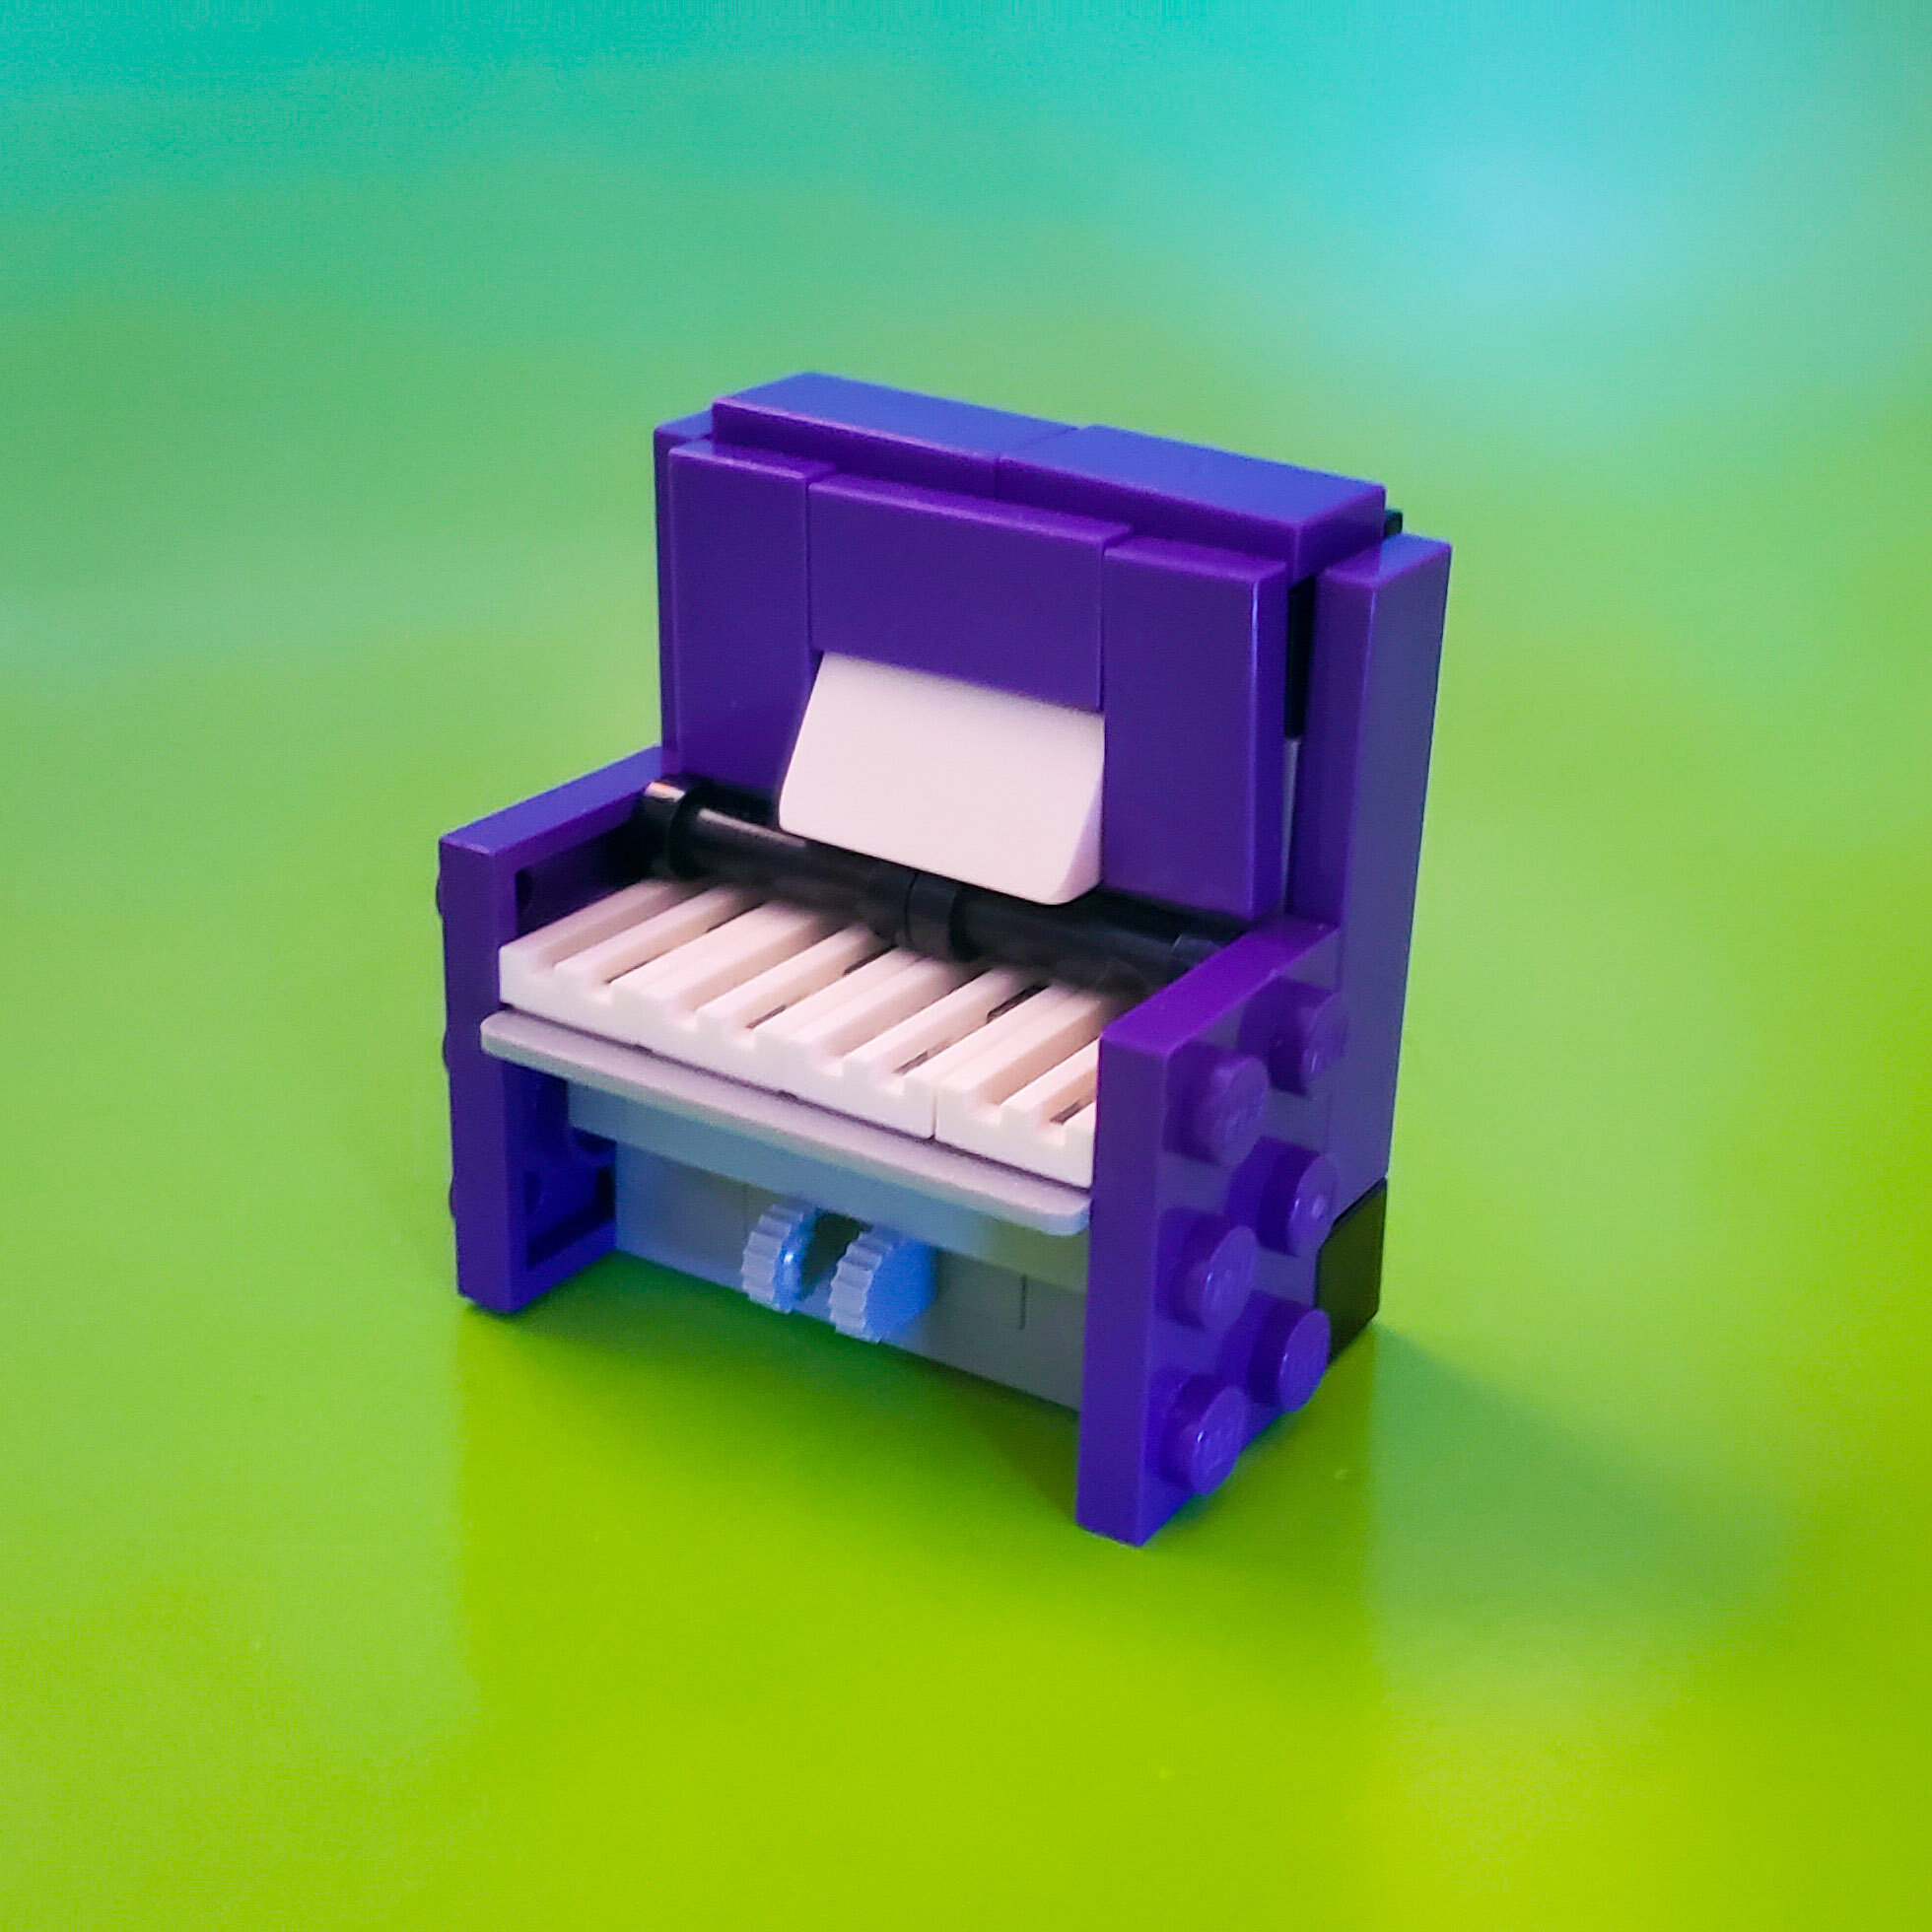 Piano lego piano de brinquedo multicolorido escola de música